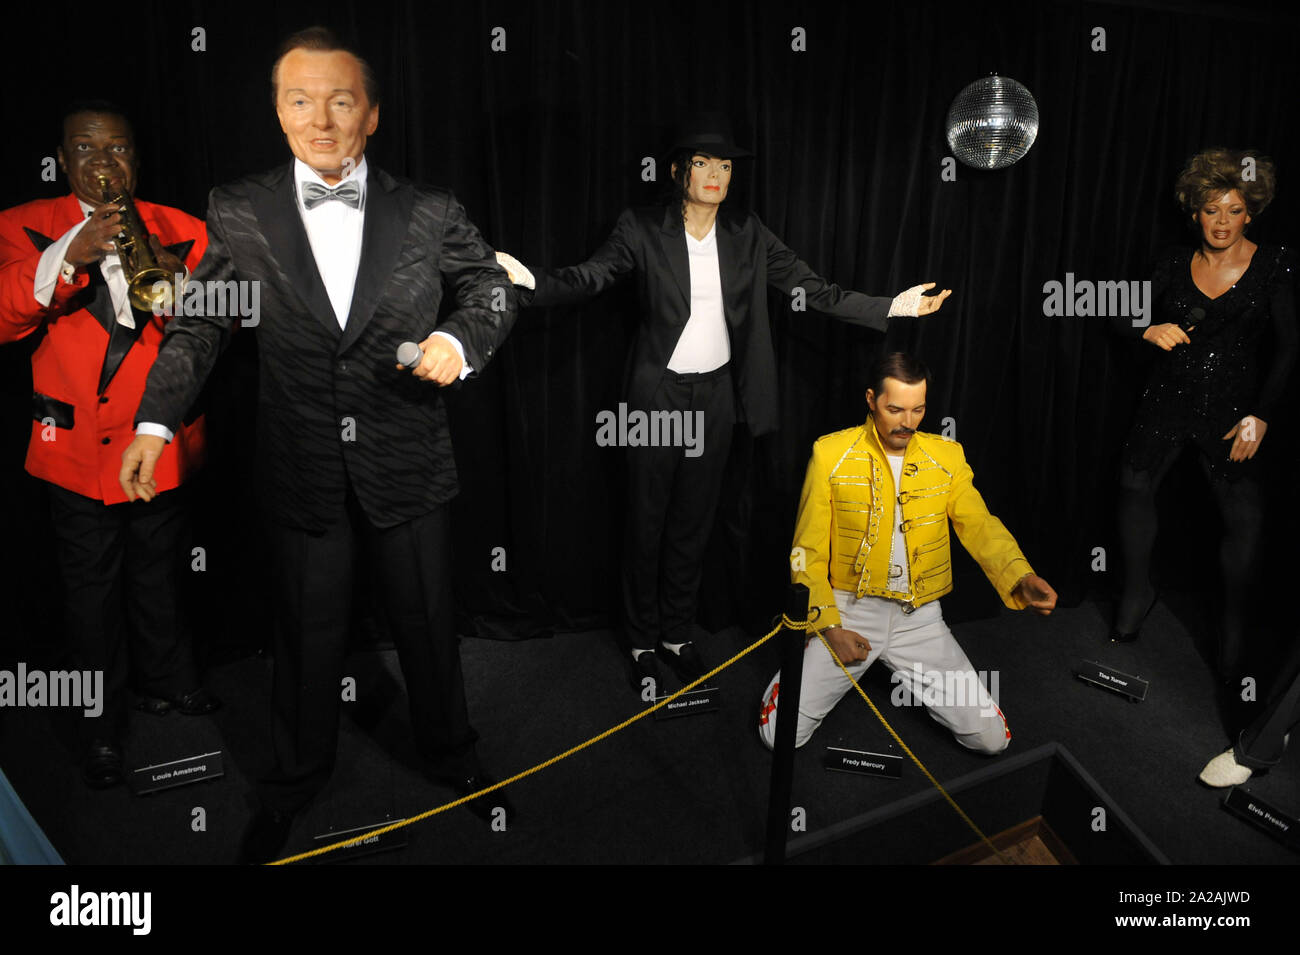 Praga, República Checa. El 30 de junio de 2011. Figuras de Cera de Louis  Armstrong (izquierda a derecha), Karel Gott, Michael Jackson, Freddie  Mercury y Tina Turner son fotografiados en el Museo